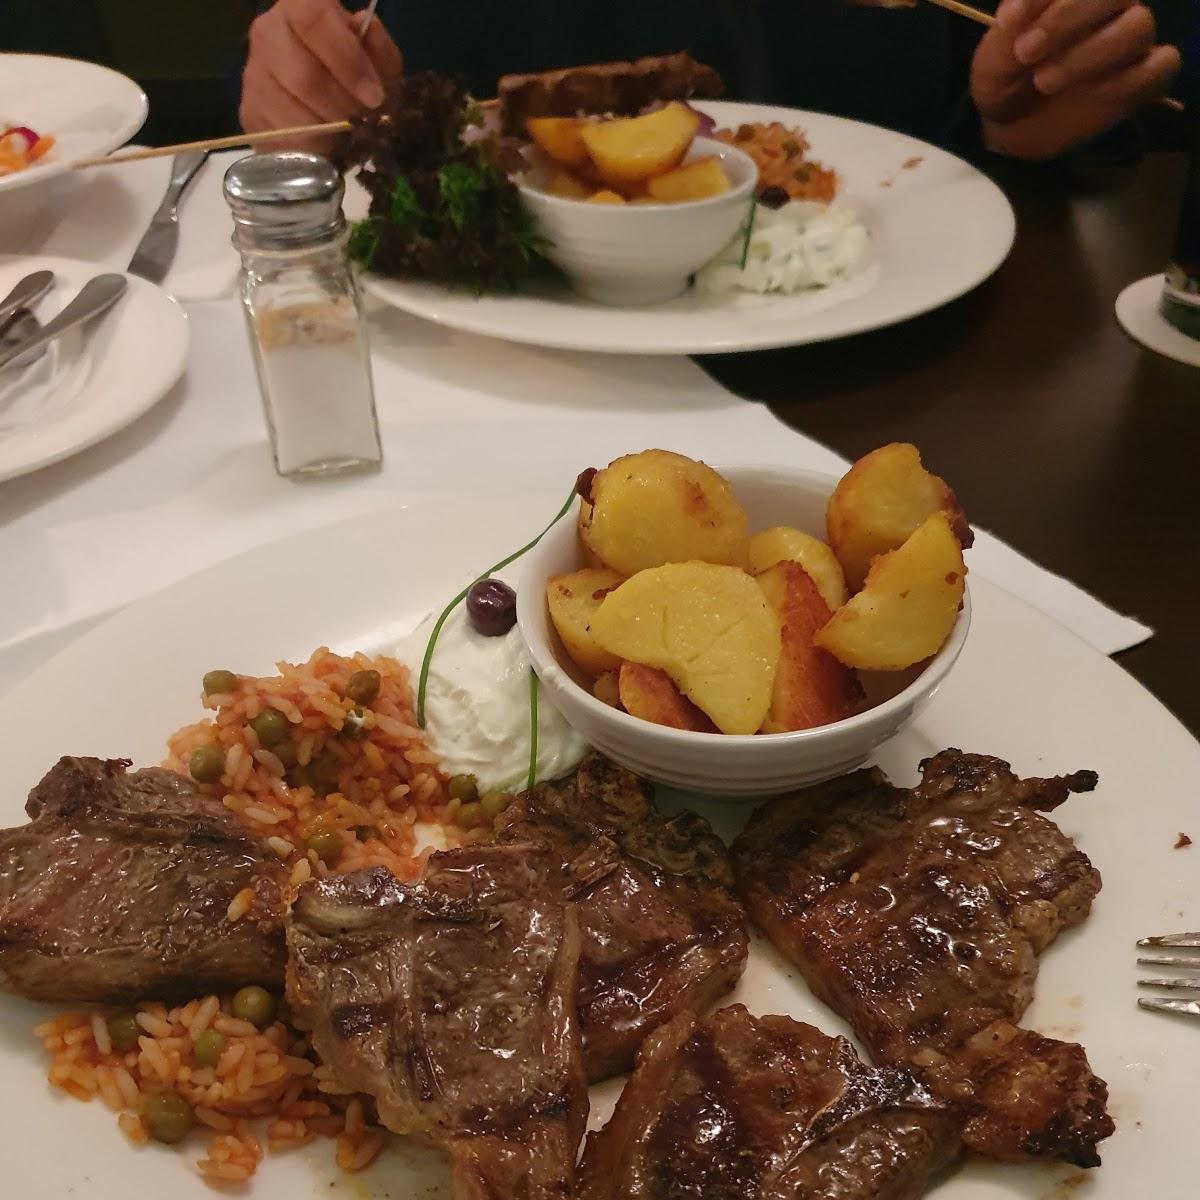 Restaurant "Arkadia Griechisches Restaurant" in Rosenheim